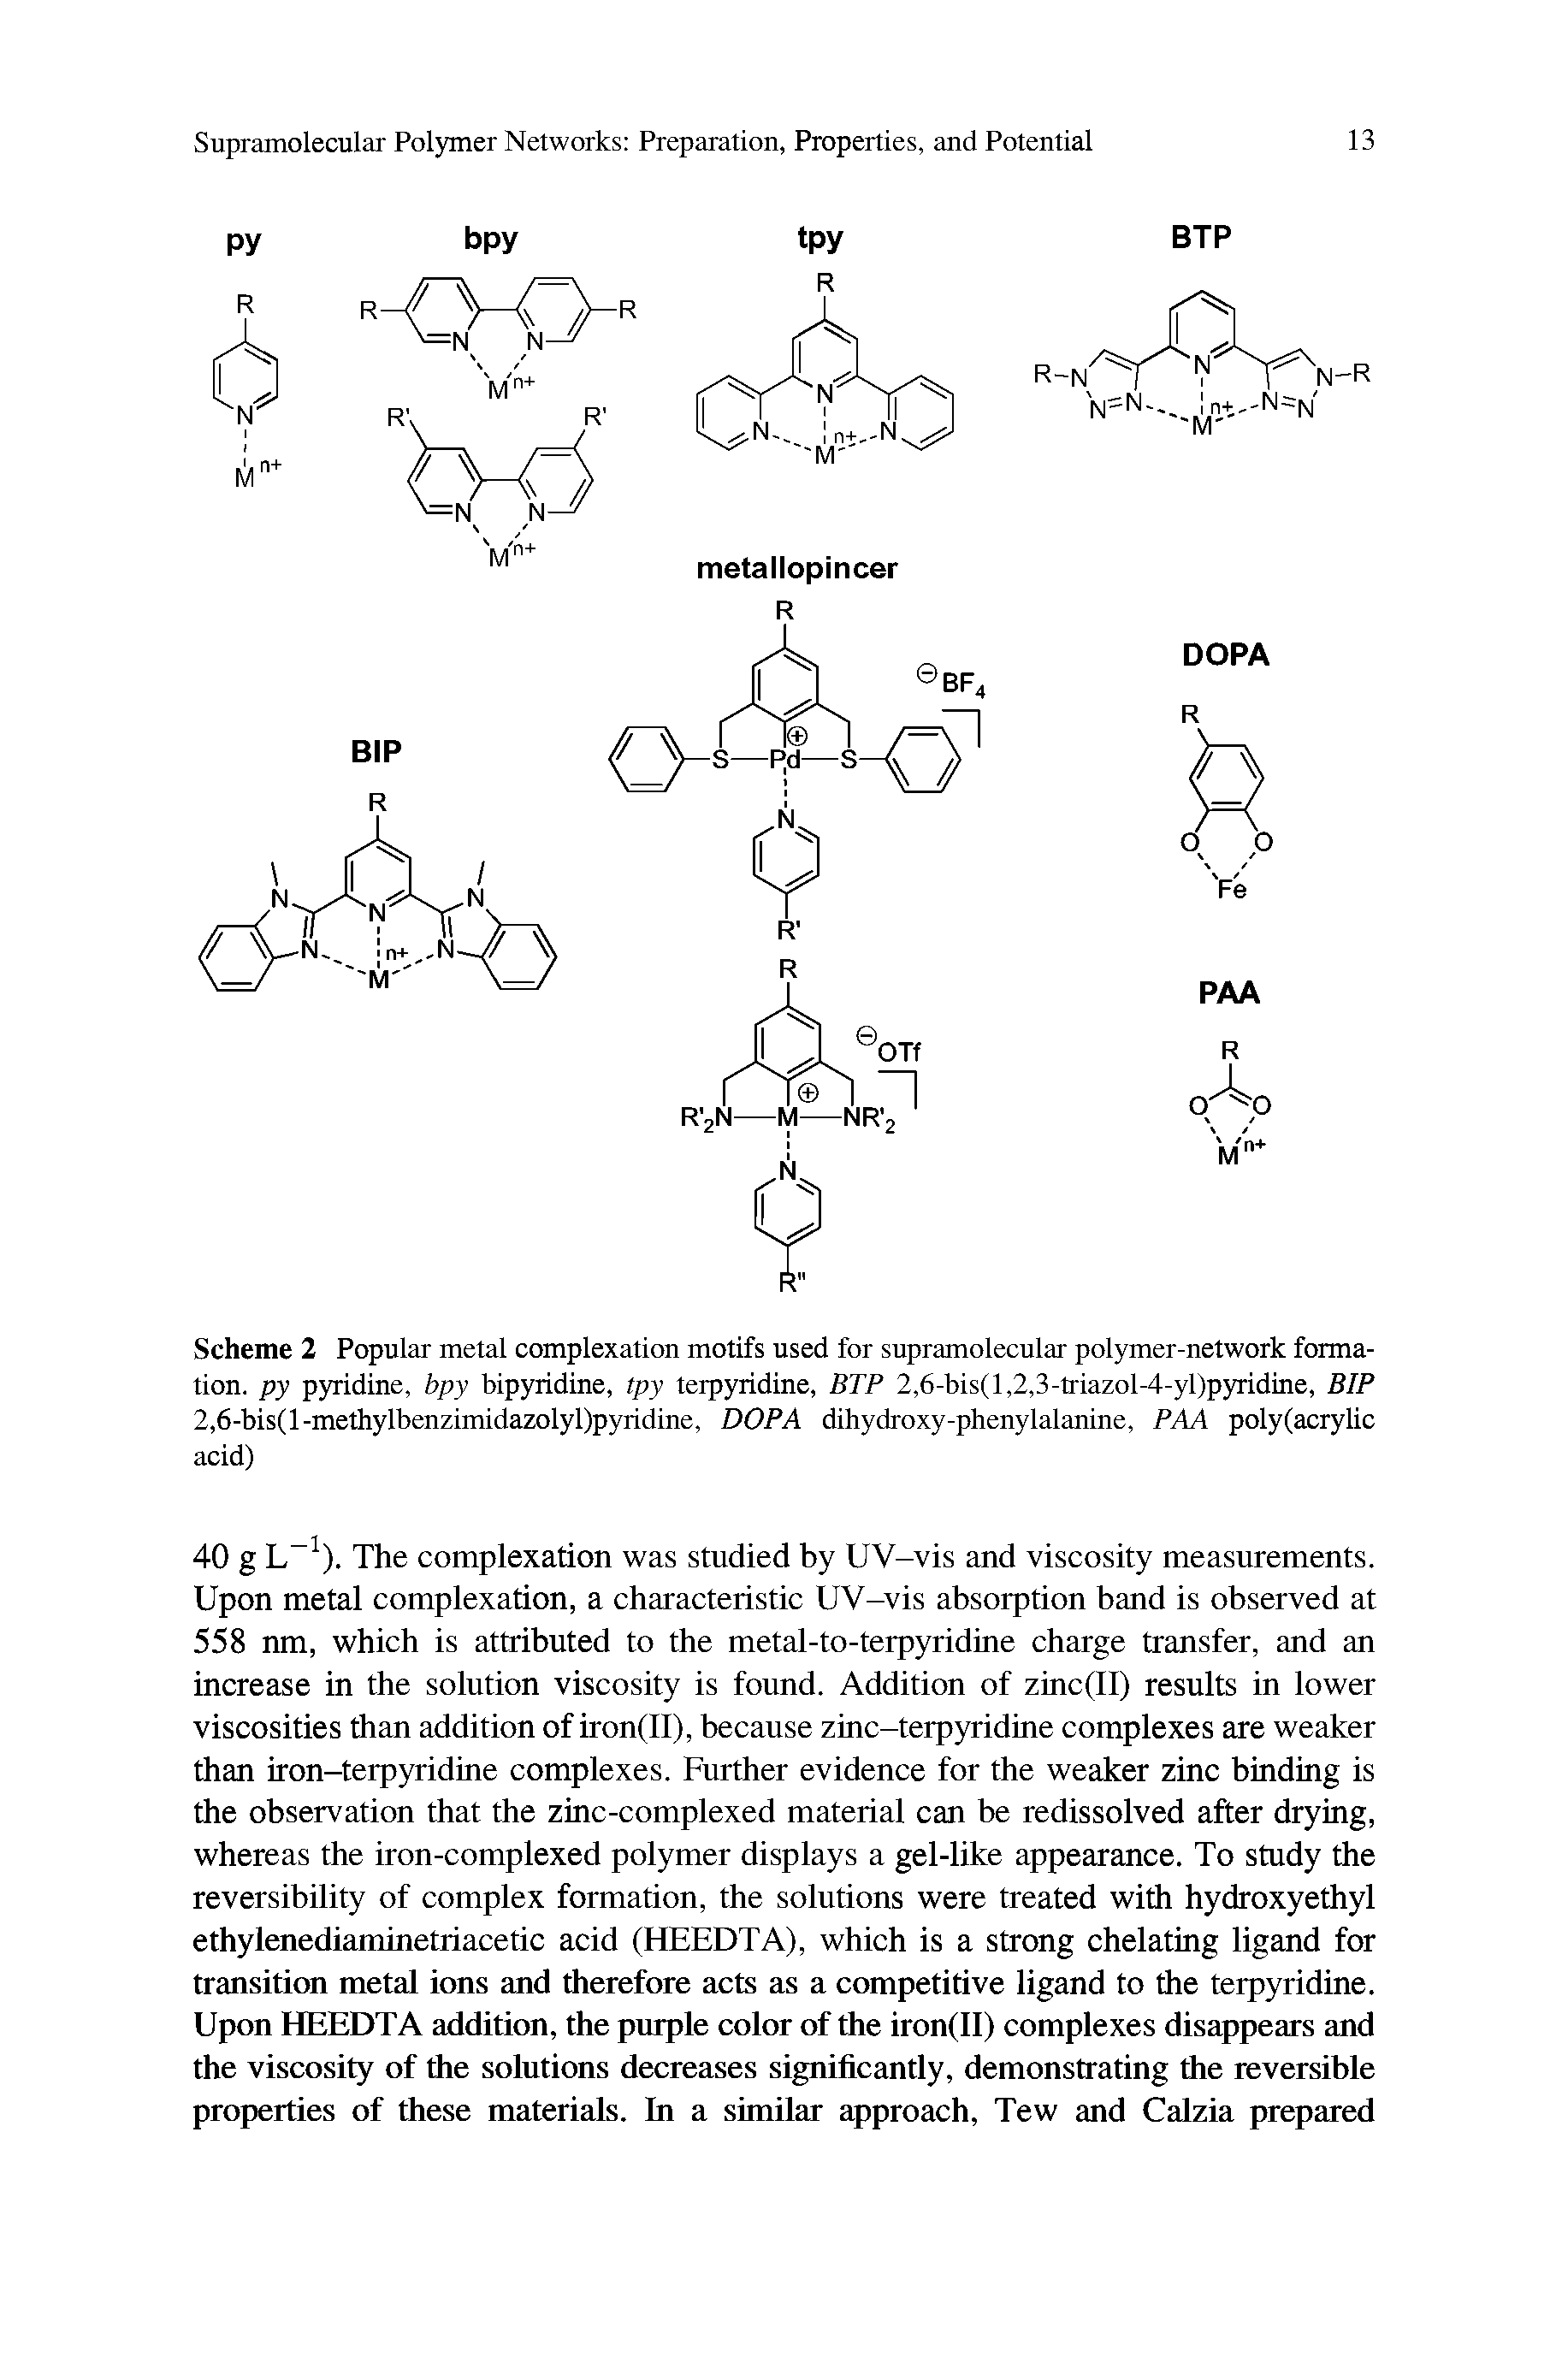 Scheme 2 Popular metal complexation motifs used for supramolecular polymer-network formation. py pyridine, bpy bipyridine, tpy terpyridine, BTP 2,6-bis(l,2,3-triazol-4-yl)pyridine, BIP 2,6-bis(l-methylbenzimidazolyl)pyridine, DOPA dihydroxy-phenylalanine, PAA poly (acrylic acid)...